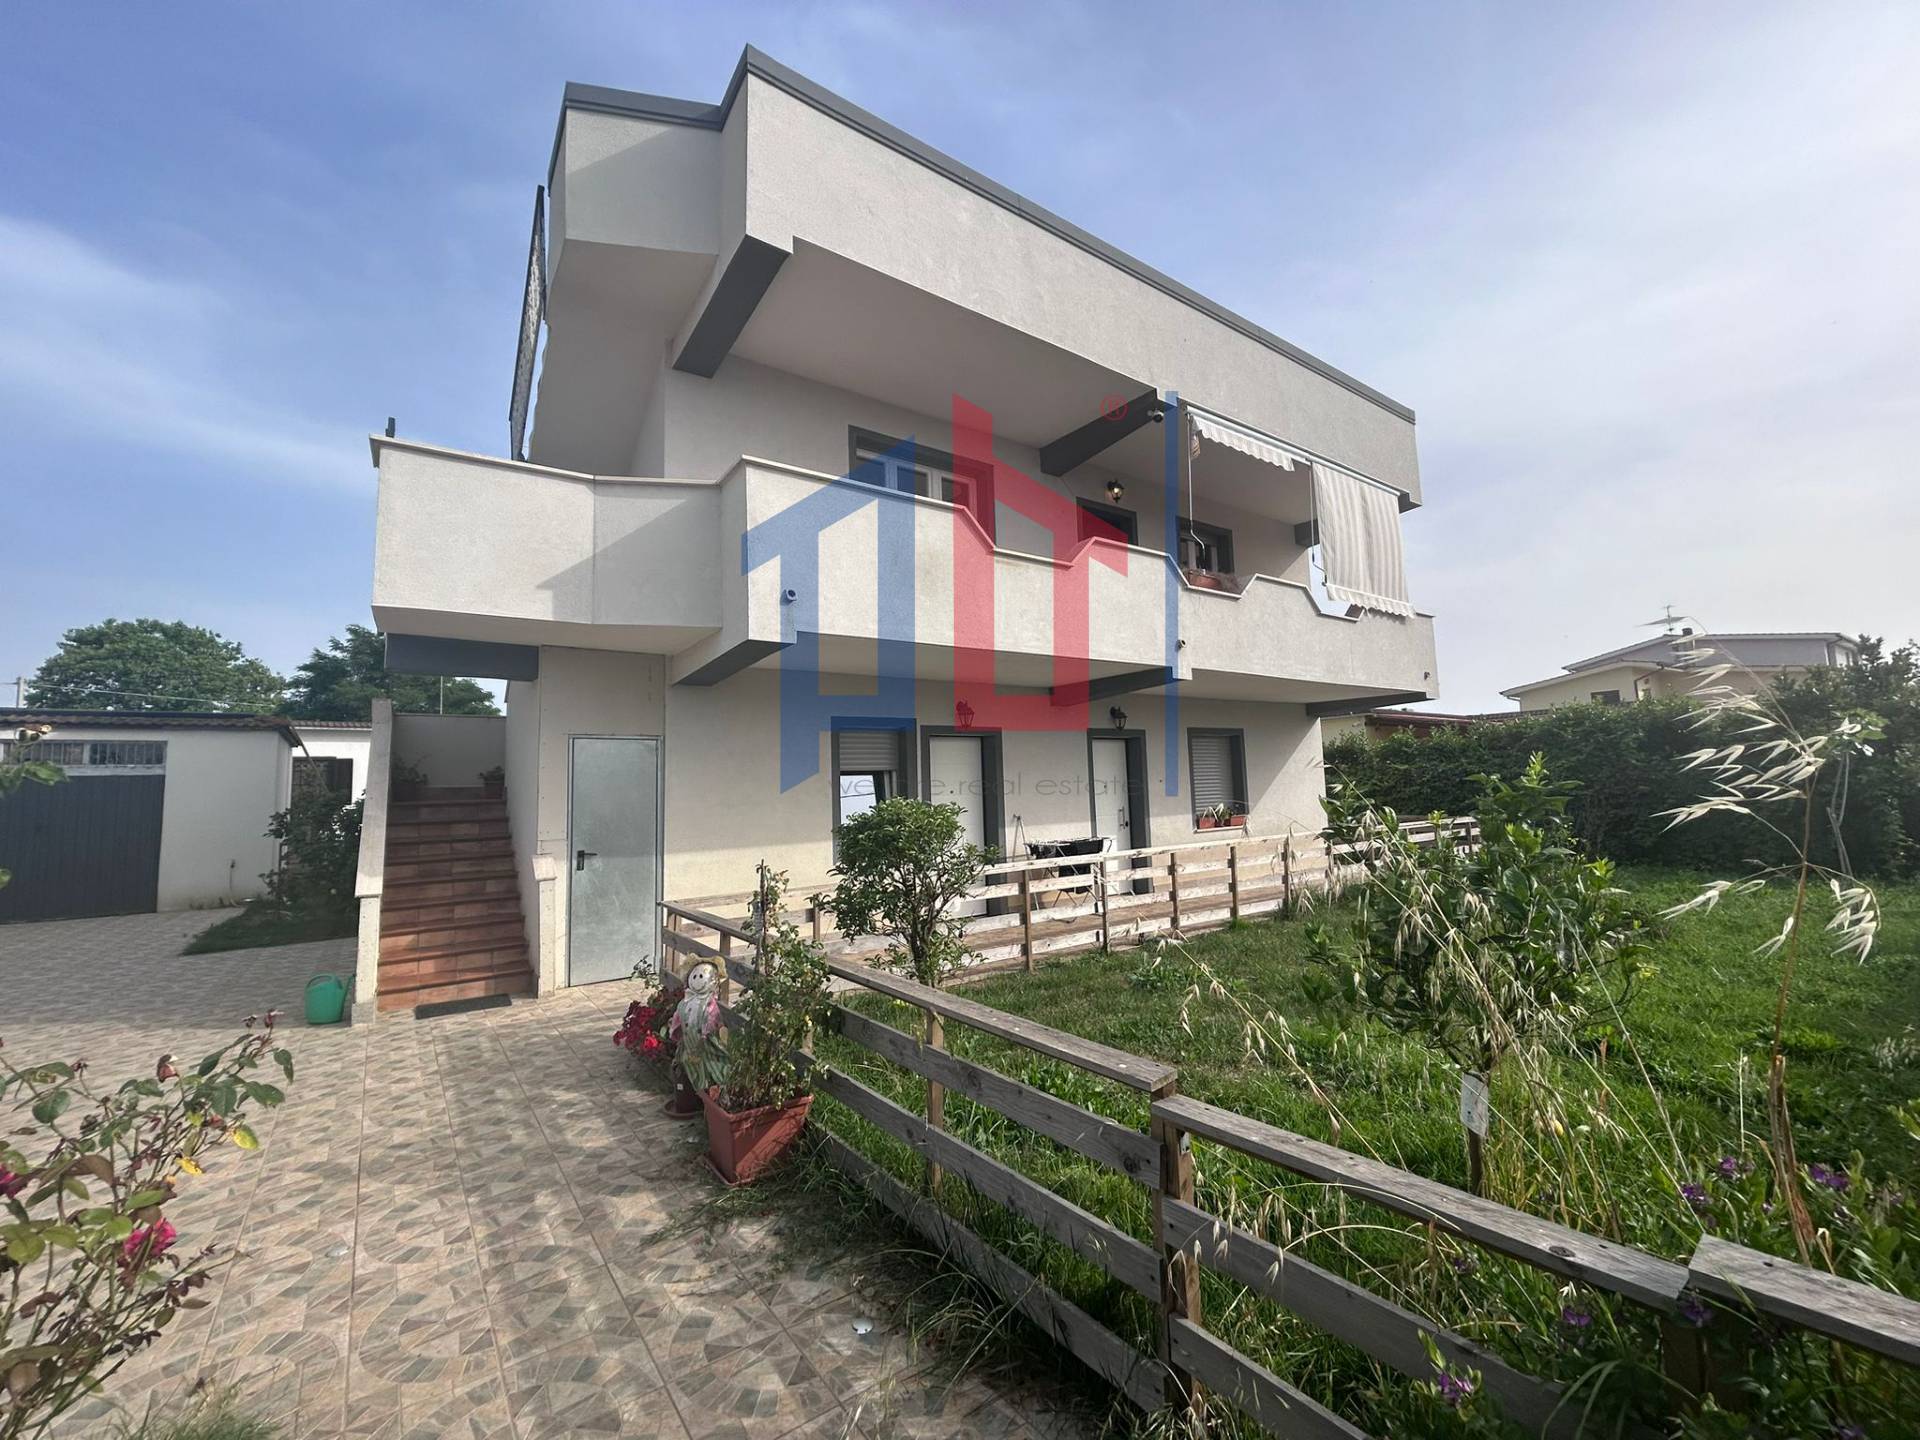 Villa in vendita a Ardea, 7 locali, zona Località: MarinadiArdea, prezzo € 280.000 | PortaleAgenzieImmobiliari.it